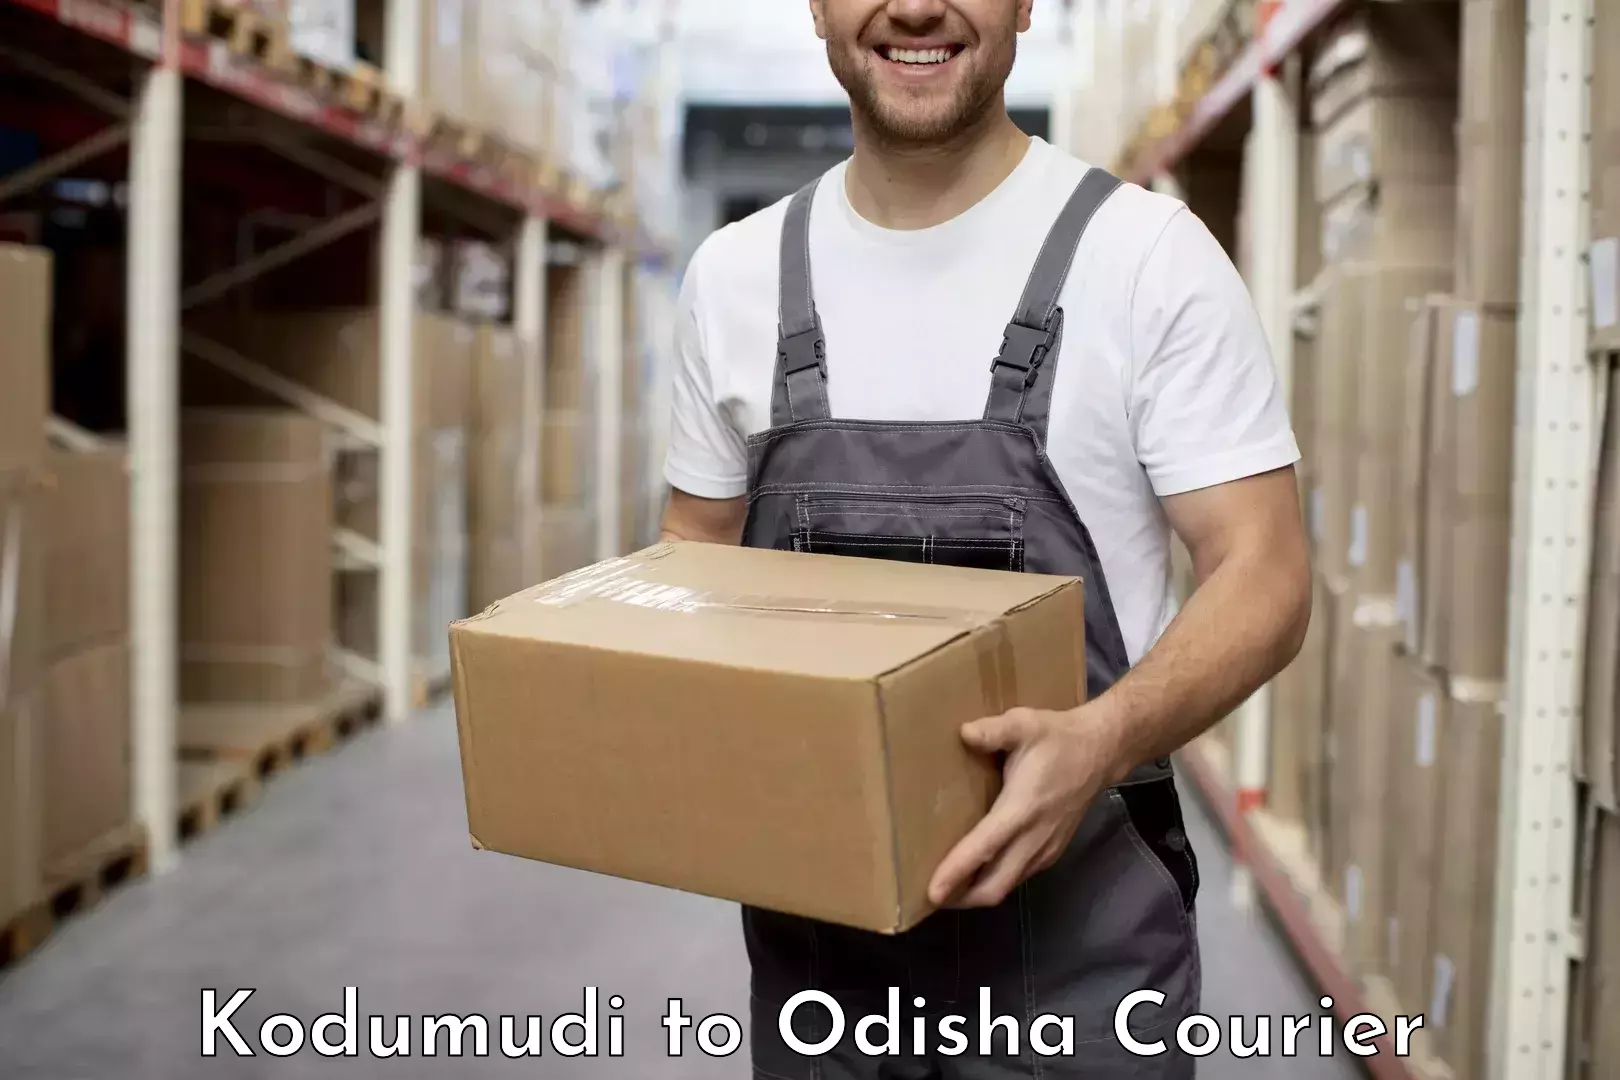 Reliable delivery network Kodumudi to Kantabanji